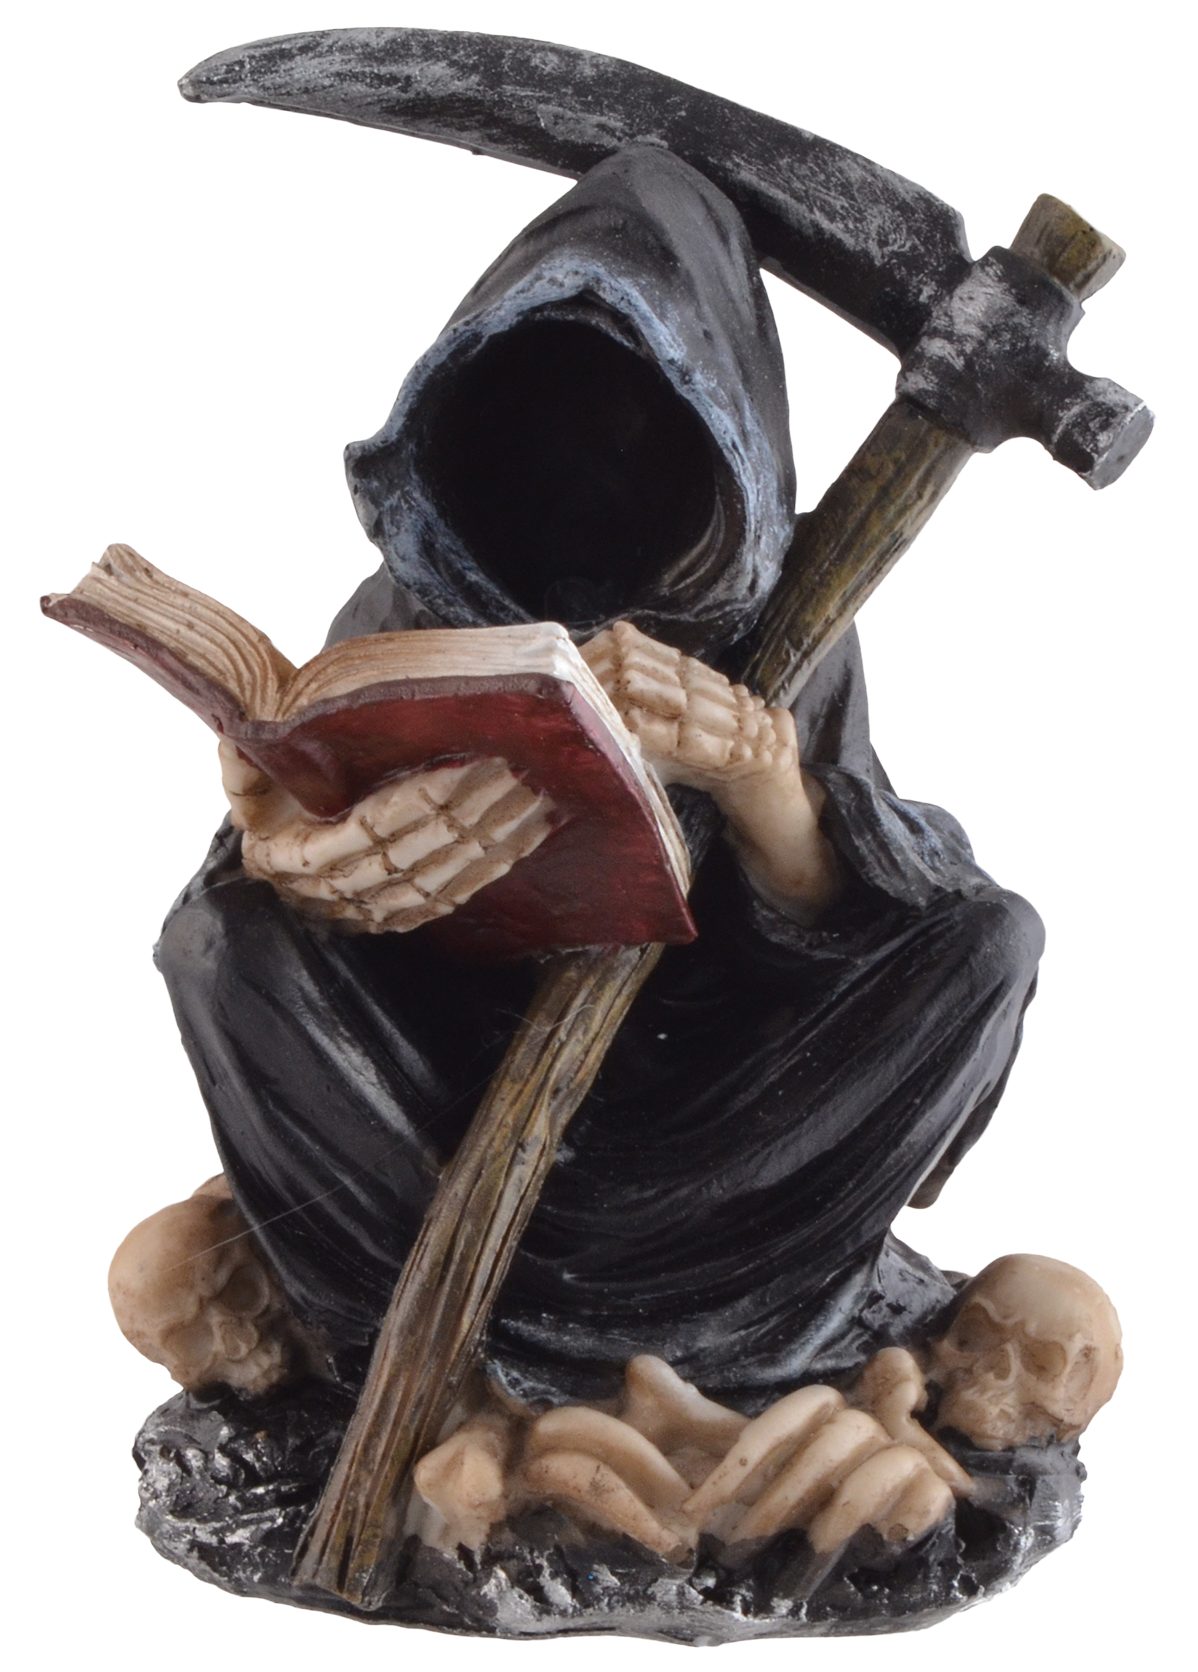 Vogler direct Gmbh Dekofigur Grim Reaper liest im Totenbuch, Größe: LxBxH ca. 9x8x12 cm, LED-Beleuchtung